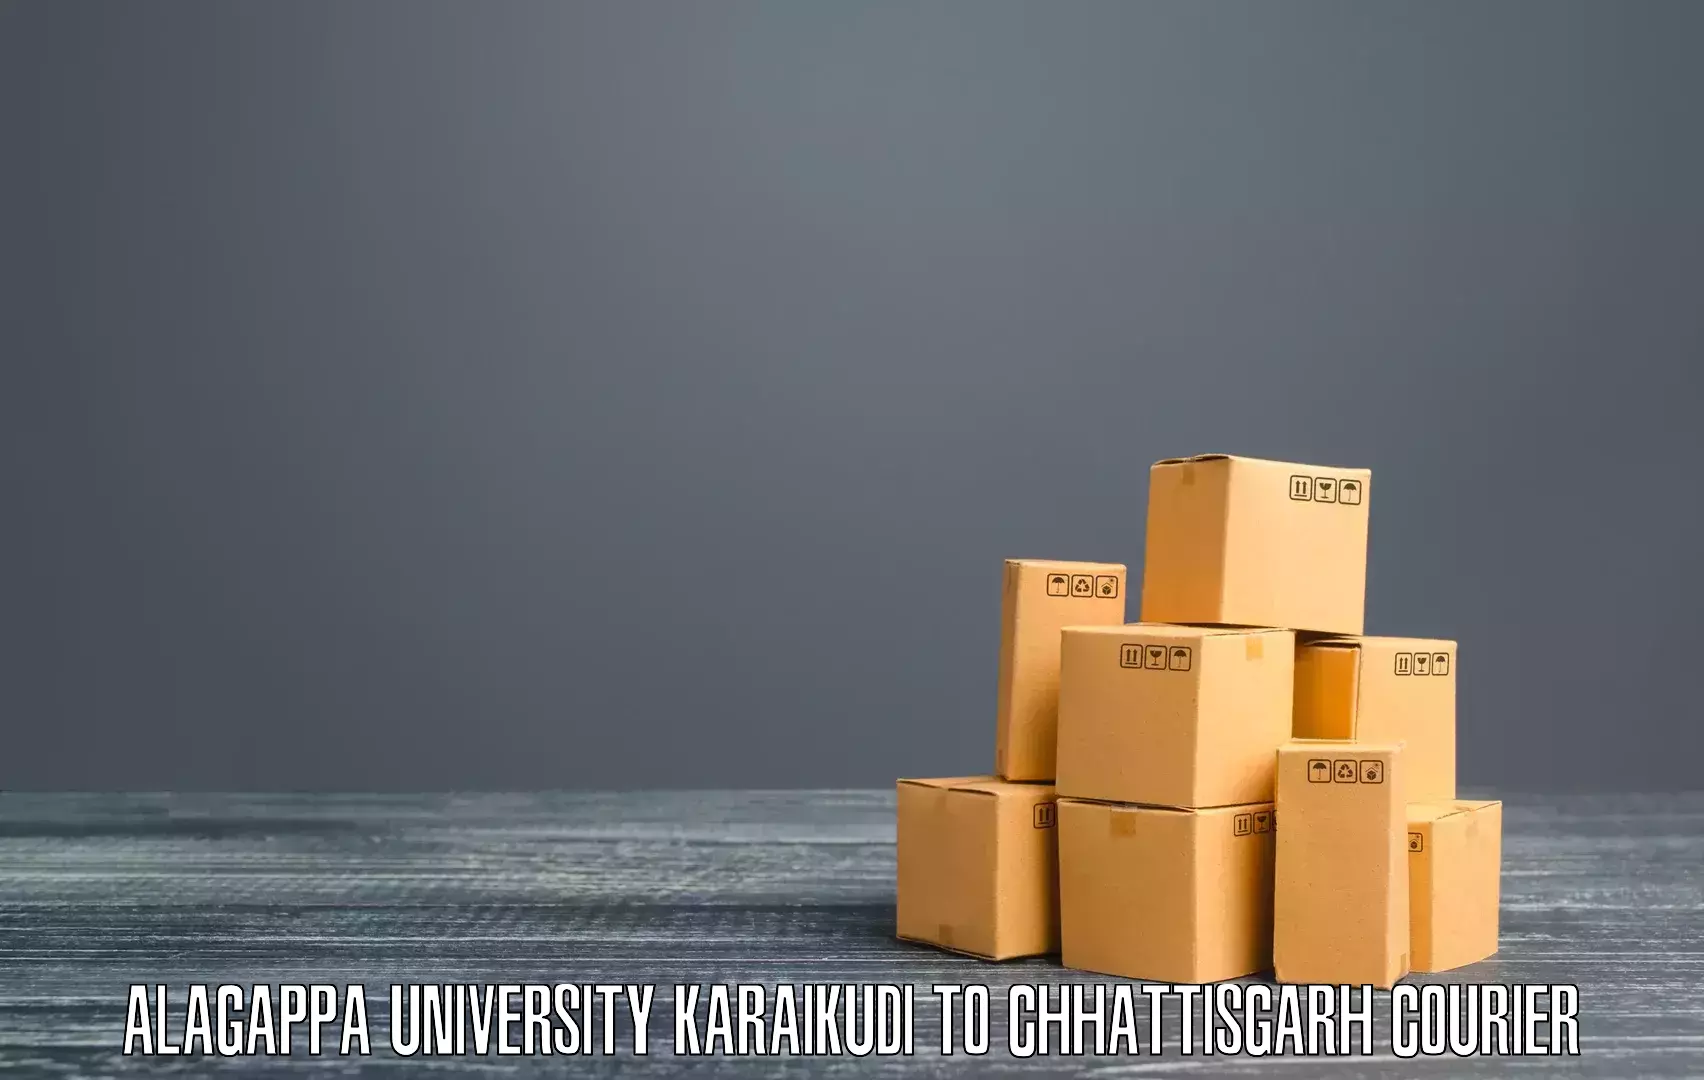 Customer-centric shipping in Alagappa University Karaikudi to bagbahra